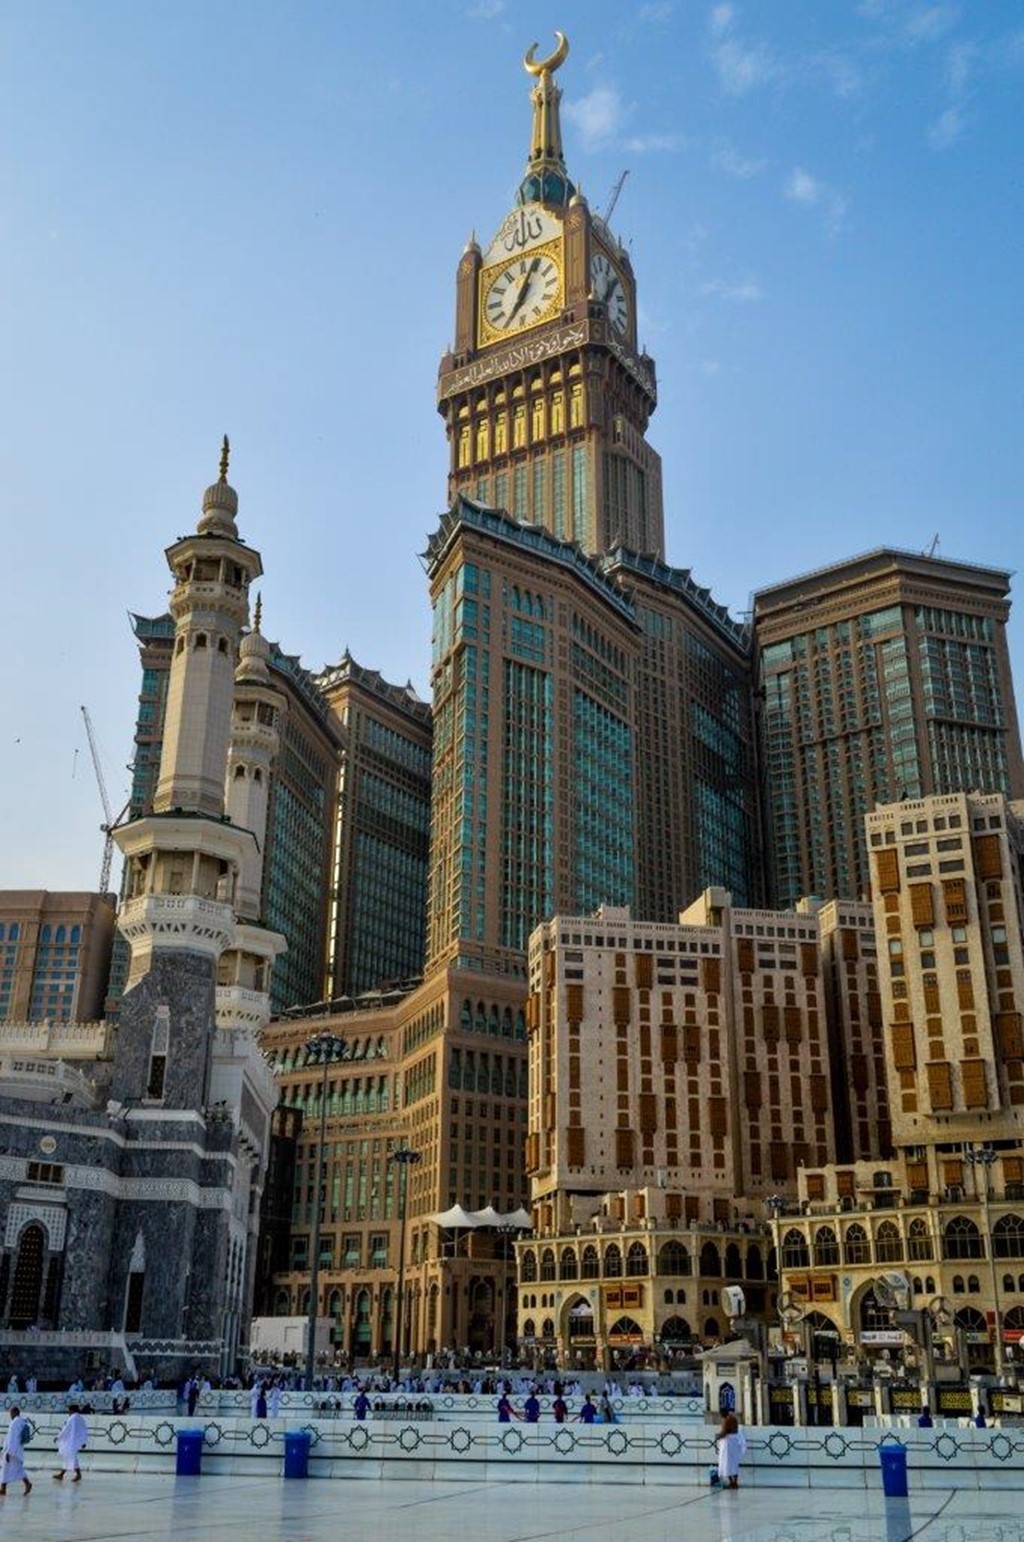 makkah-royal-clock-tower-1